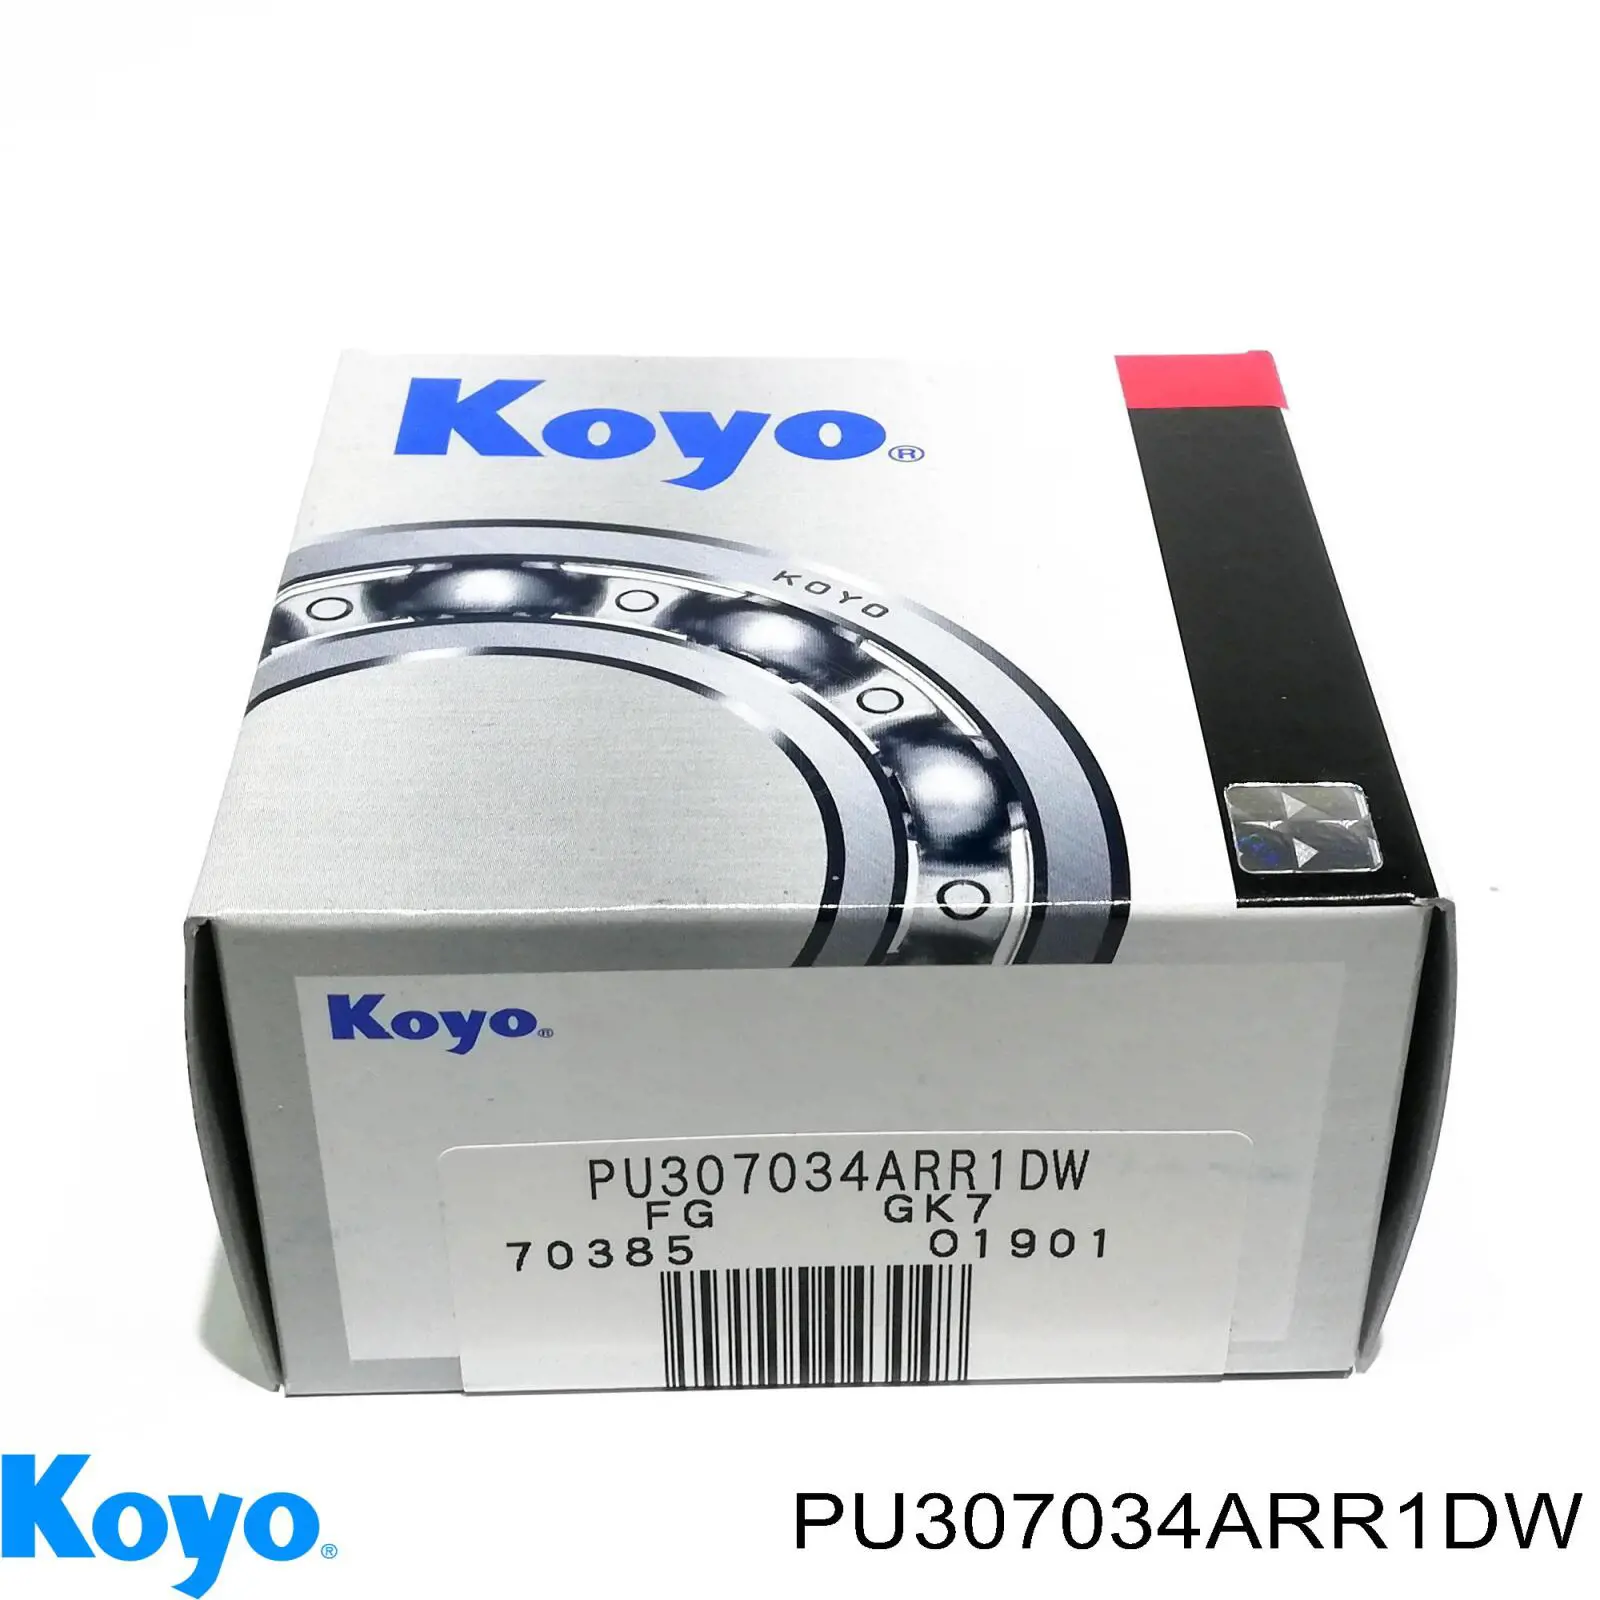 PU307034ARR1DW Koyo rolo de reguladora de tensão da correia do mecanismo de distribuição de gás